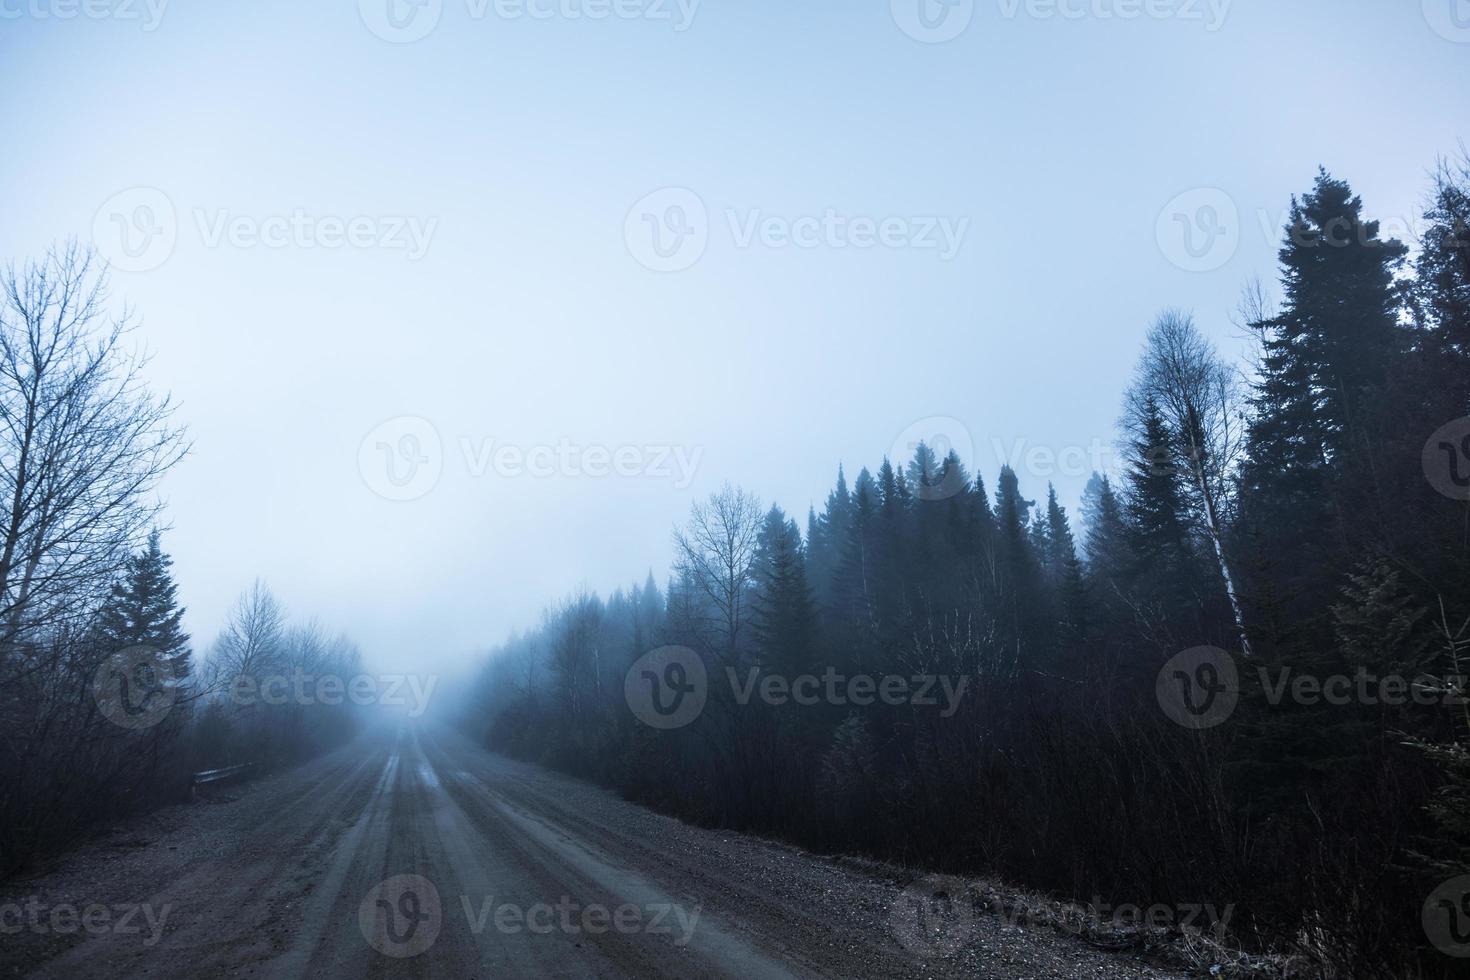 gruseliger Nebel und schlechte Sicht auf einer Landstraße im Wald foto